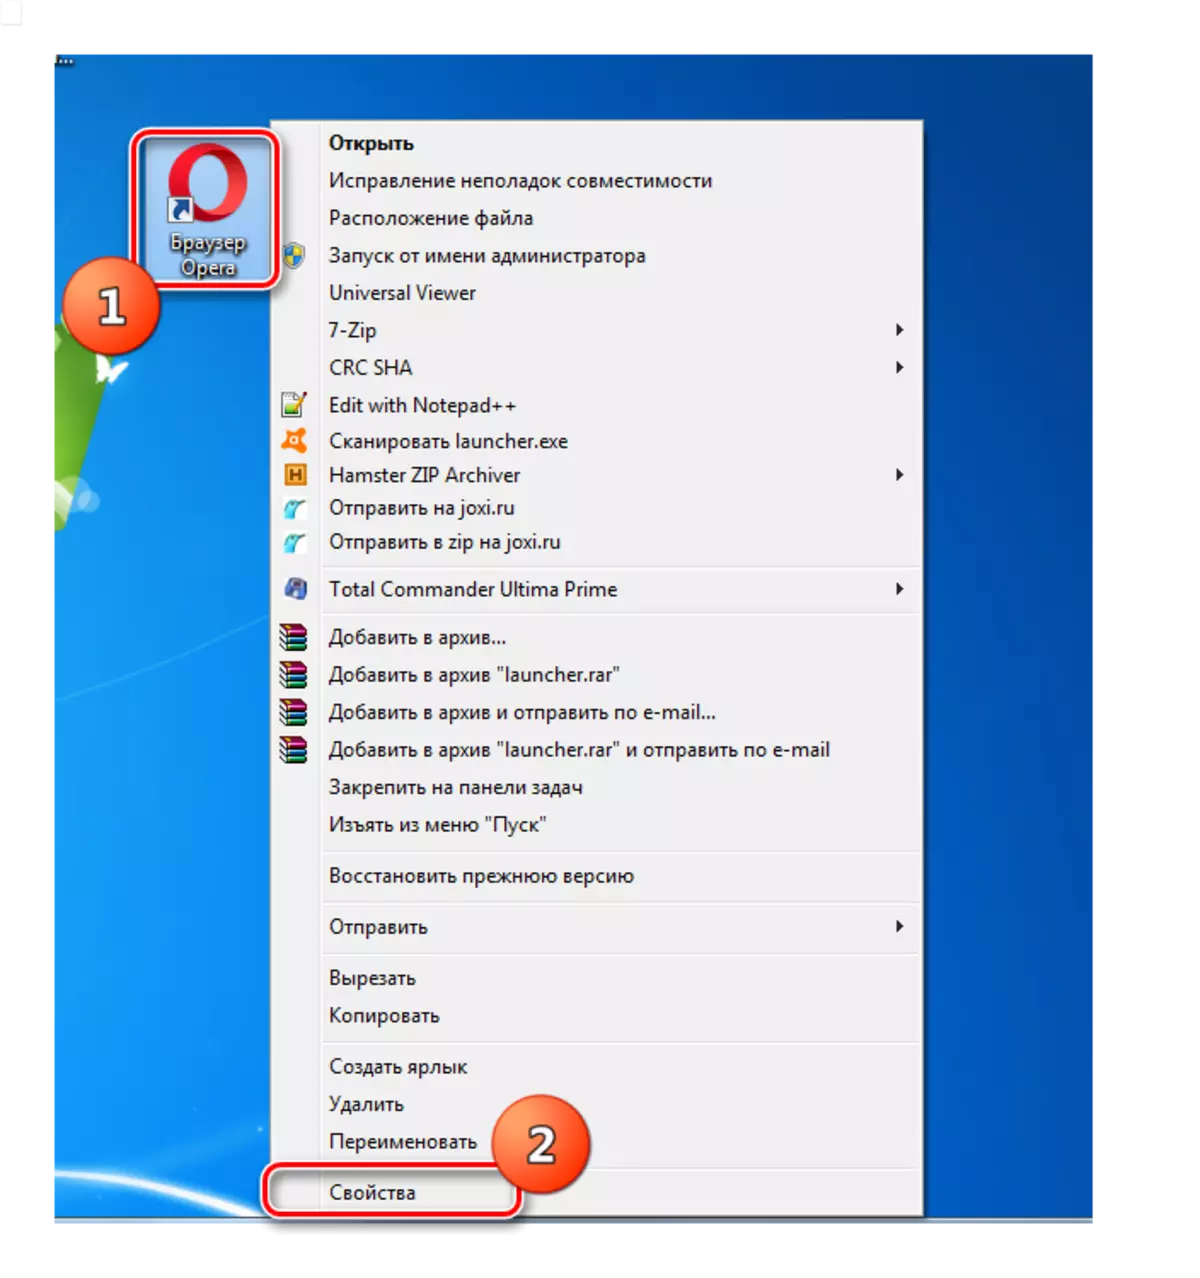 Aneu a la finestra Propietats del navegador de l'Opera a través del menú contextual a Windows 7